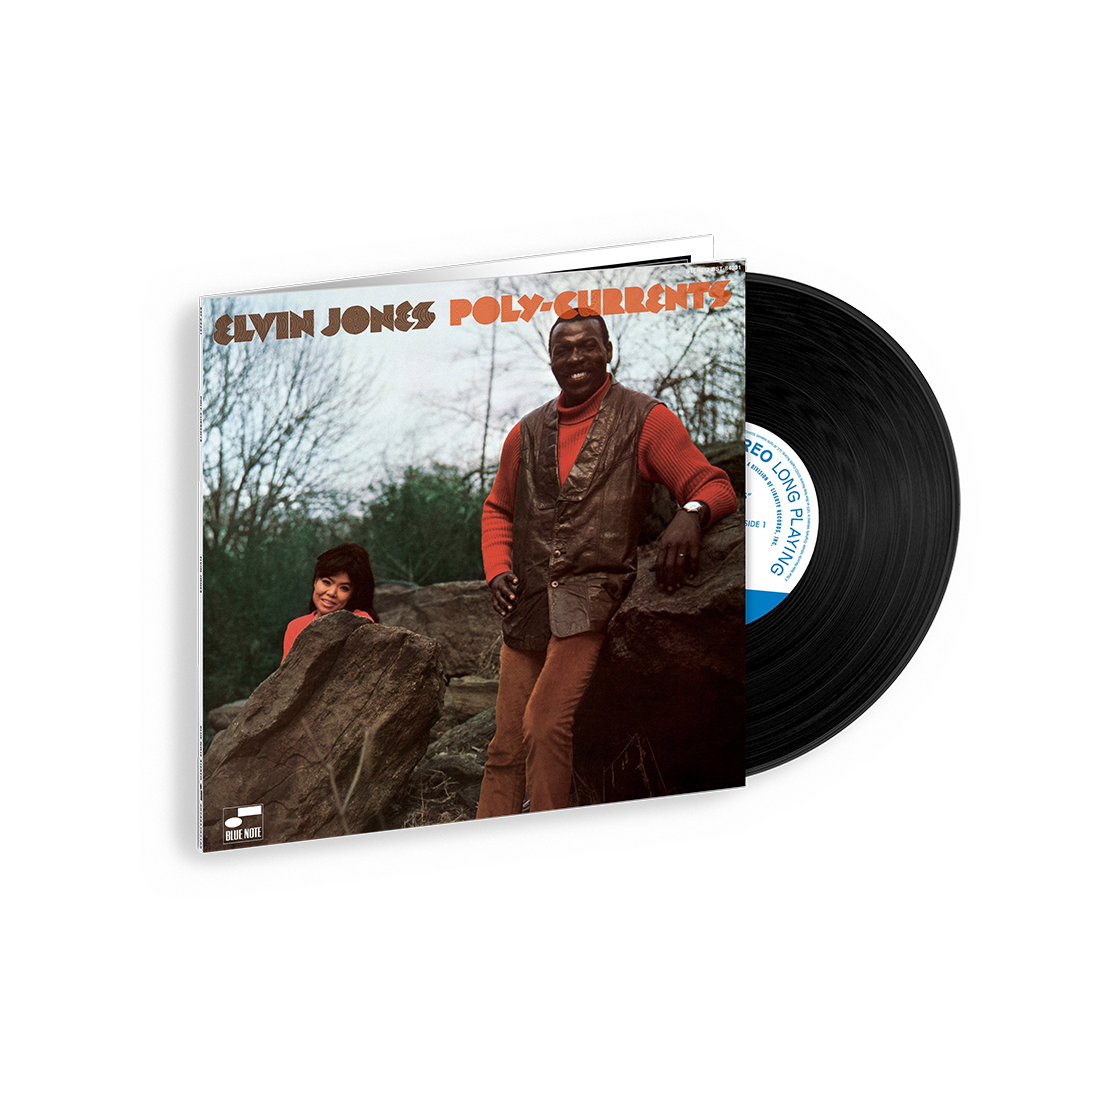 Elvin Jones - Poly-Currents (Tone Poet Series): Vinyl LP